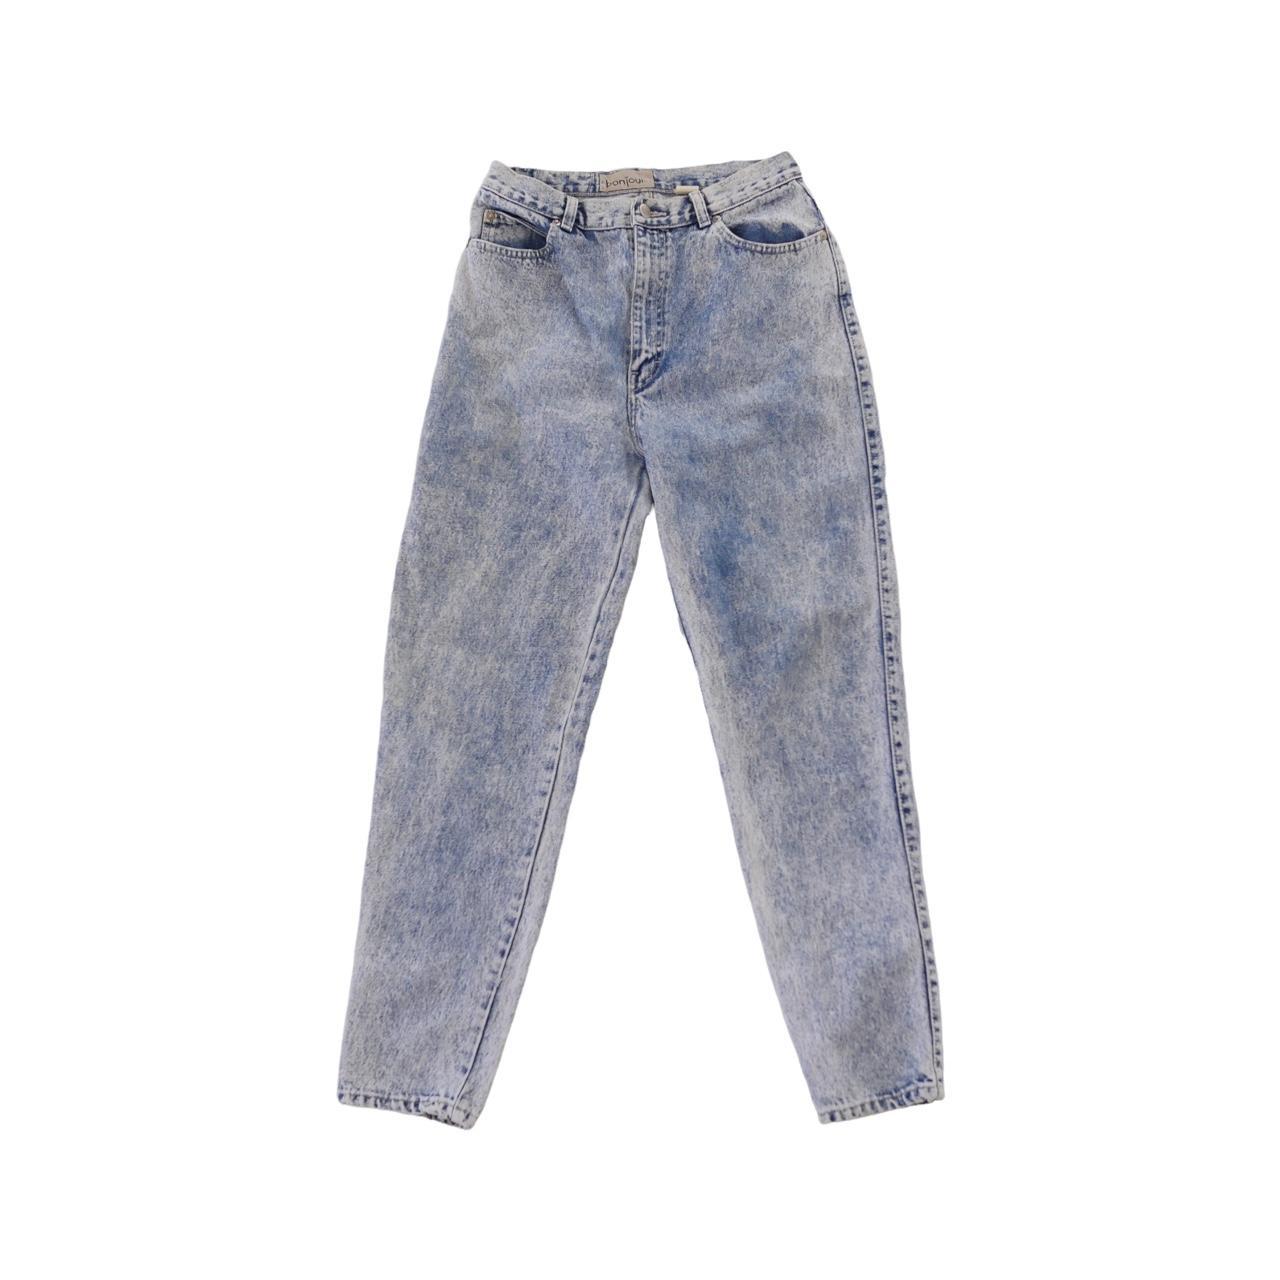 Product Image 2 - Bonjour Acid Wash jeans
8/10

28 x